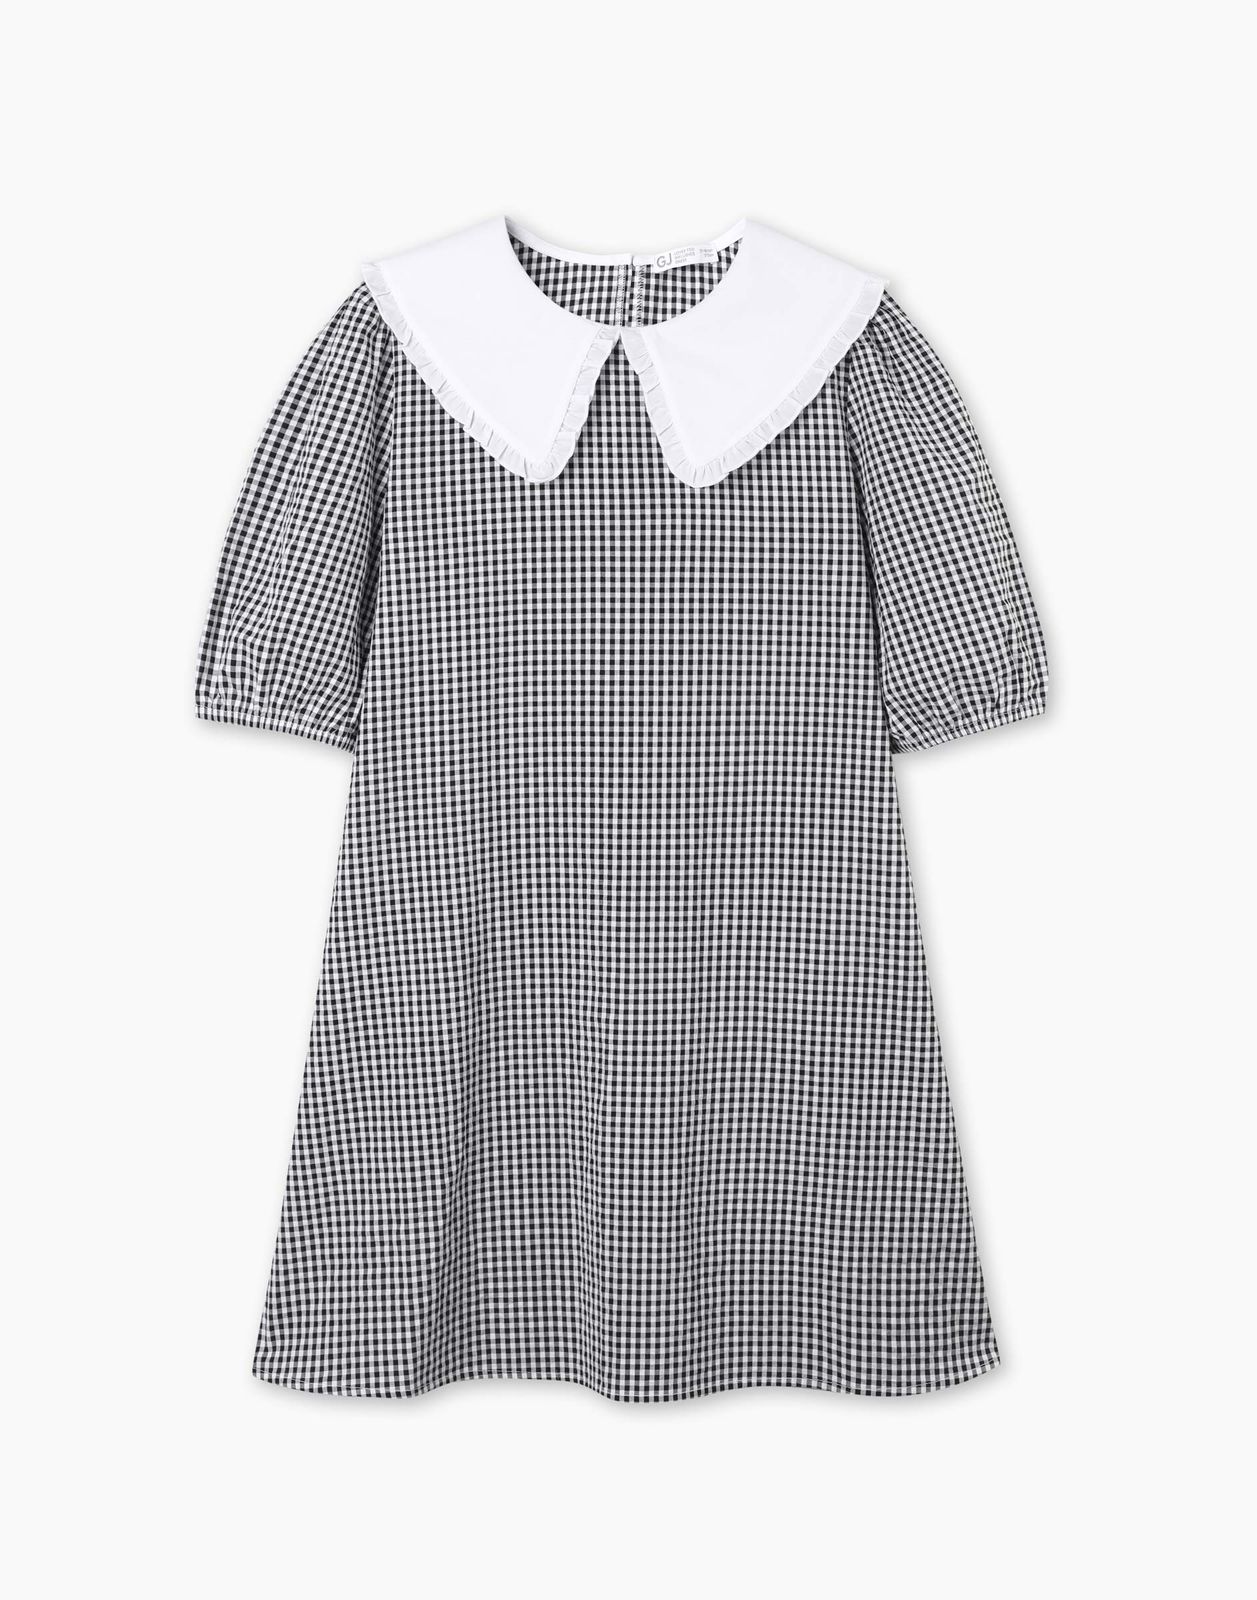 Платье детское Gloria Jeans GDR028214, белый/черный, 164